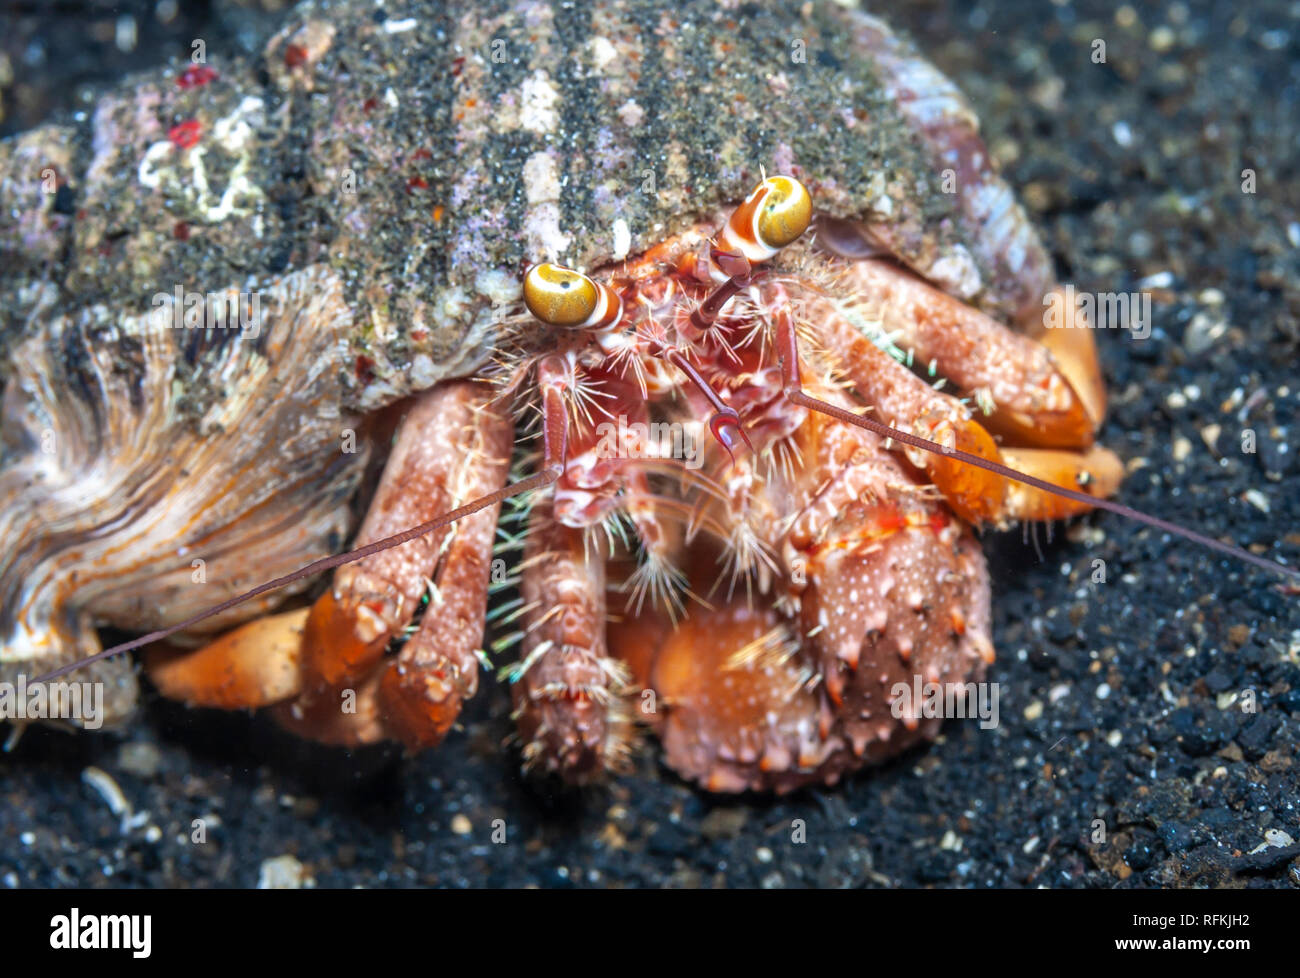 Los cangrejos son crustáceos,superfamilia Paguroidea decï¿½odos. Foto de stock